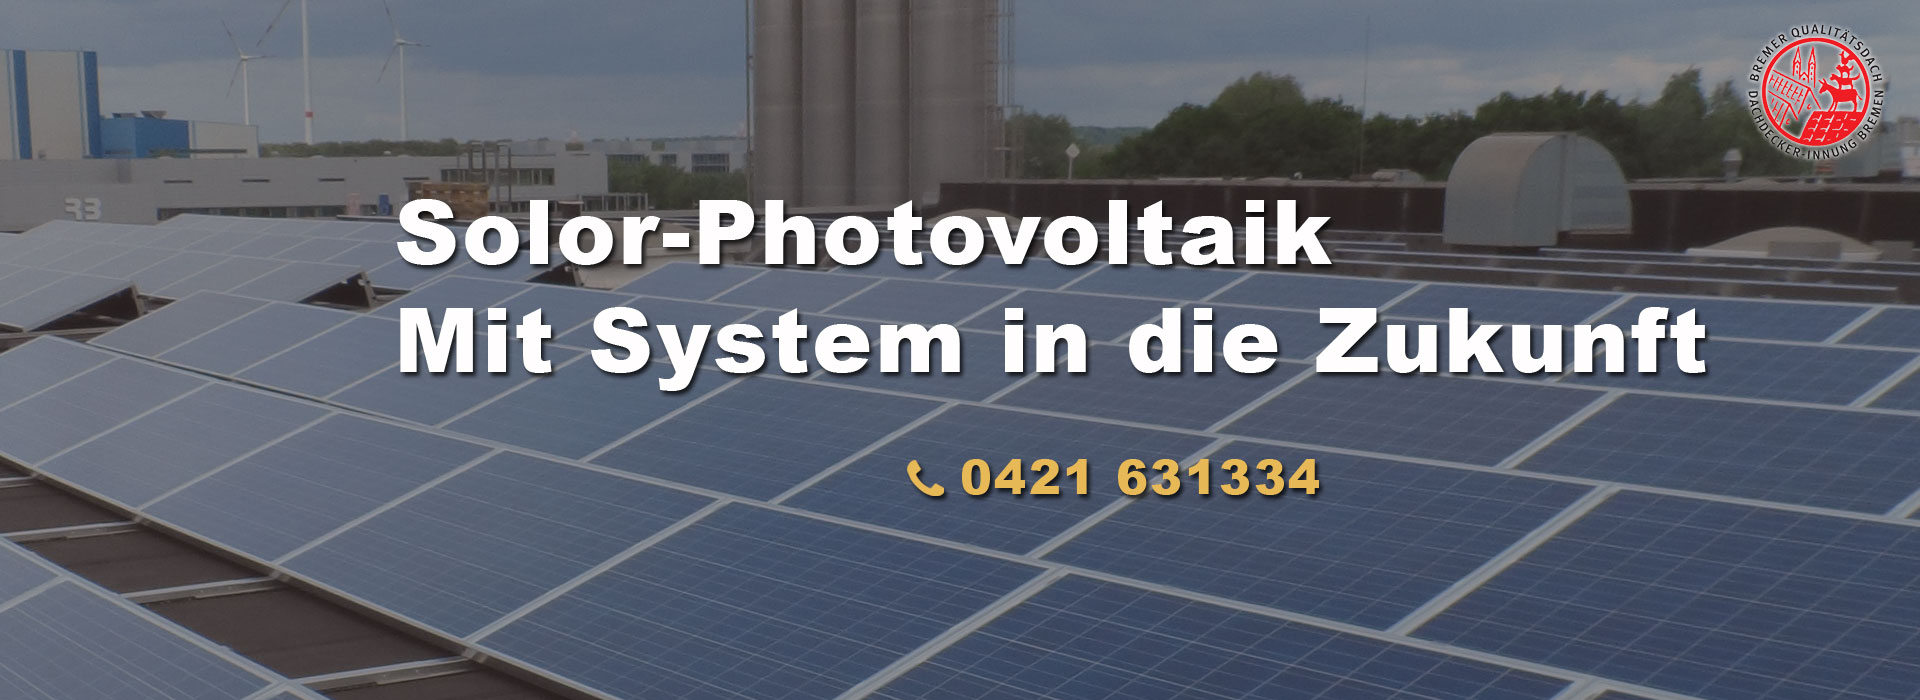 Solor-Photovoltaik von Bedachungsgesellschaft Haarde GmbH & Co. KG